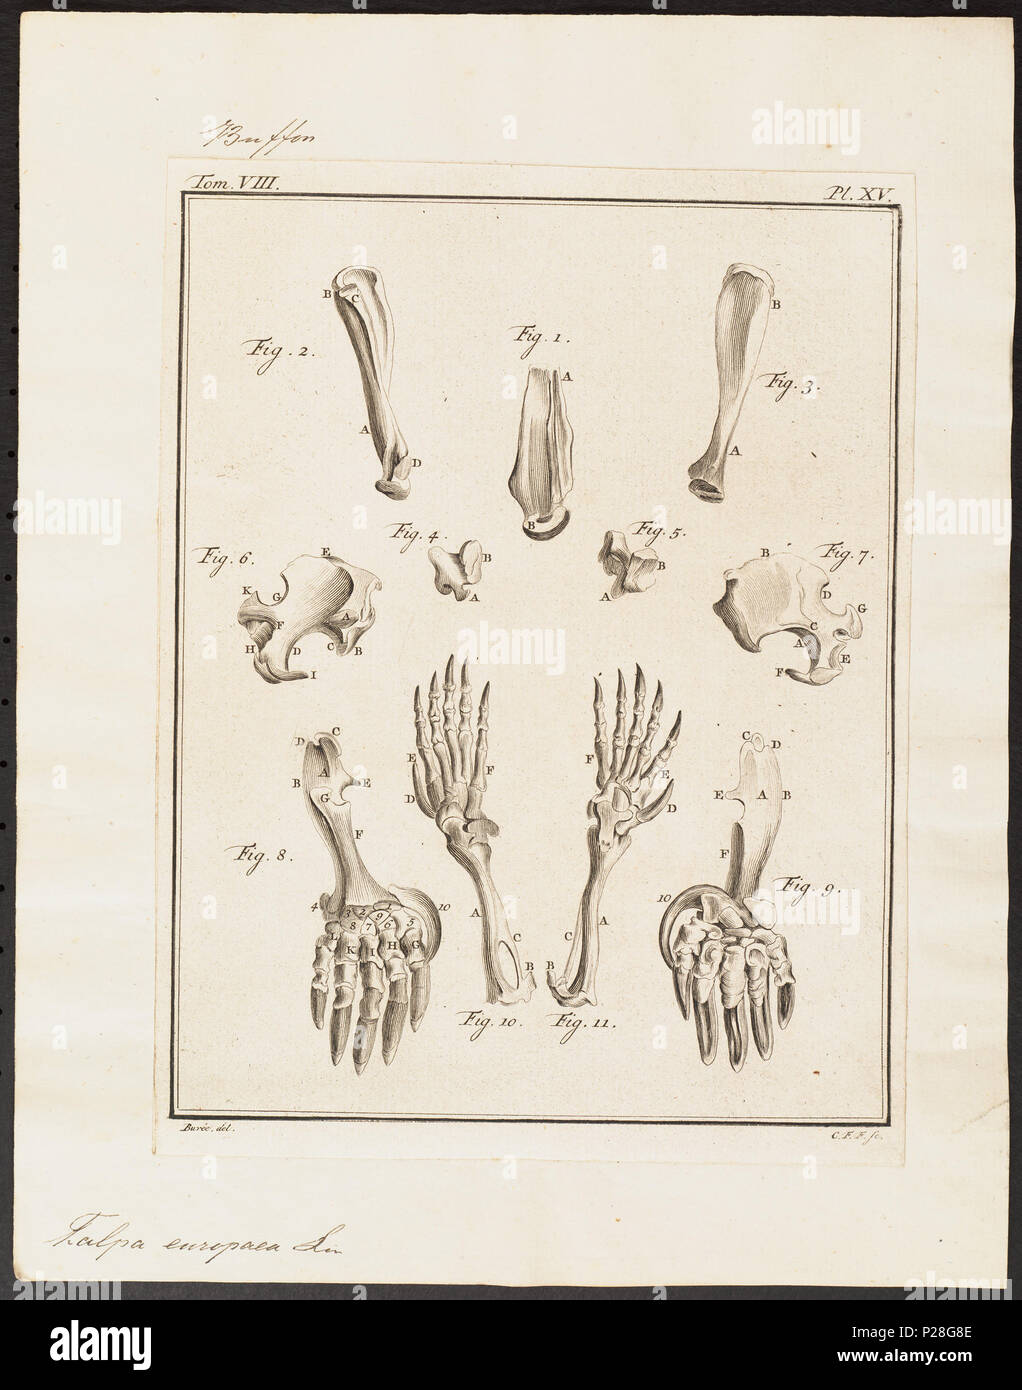 . Talpa europaea - skeletdelen . Entre 1700 et 1880 UBA01 IZ20900174-y, 07-04-09, 15:52, 8C, 7706x9913 (143 +73), 100  %  %  %  %, Tooncurve11030, 1/60 s, r80.6, G54.6, B58.3 301 Talpa europaea - skeletdelen - 1700-1880 - Imprimer - Zoologica 2e moitié - Collections spéciales de l'Université d'Amsterdam - UBA01 IZ20900173 Banque D'Images